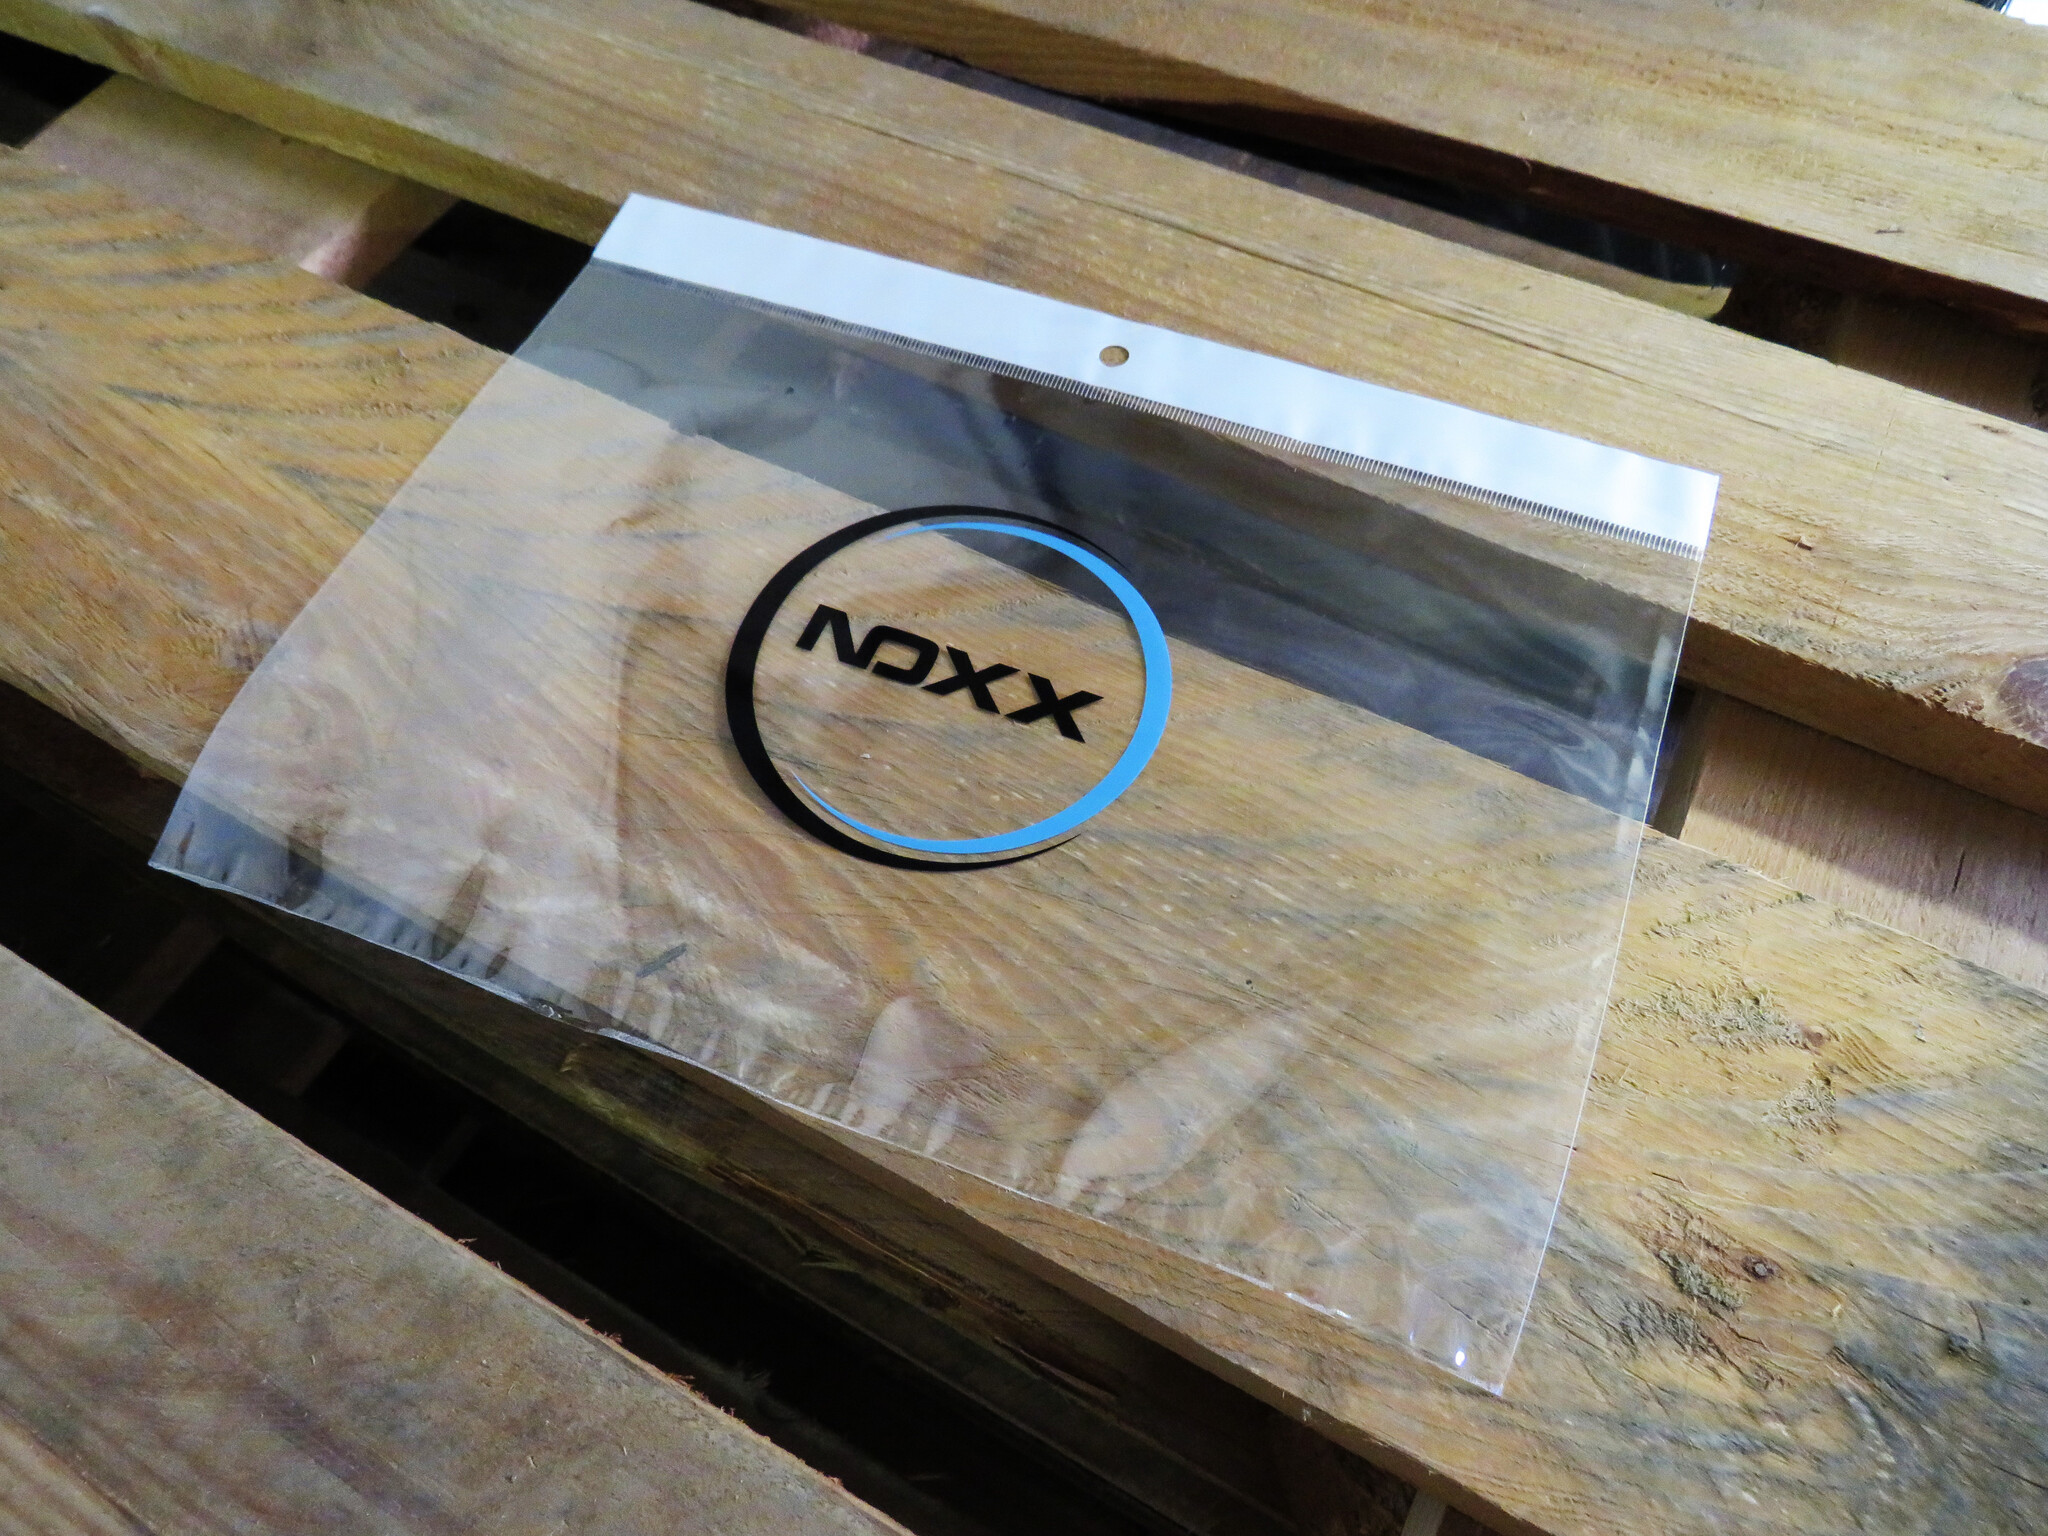 NoXx NoXx iPad Pro 11 inch (2022) Toetsenbordhoes - Zwart